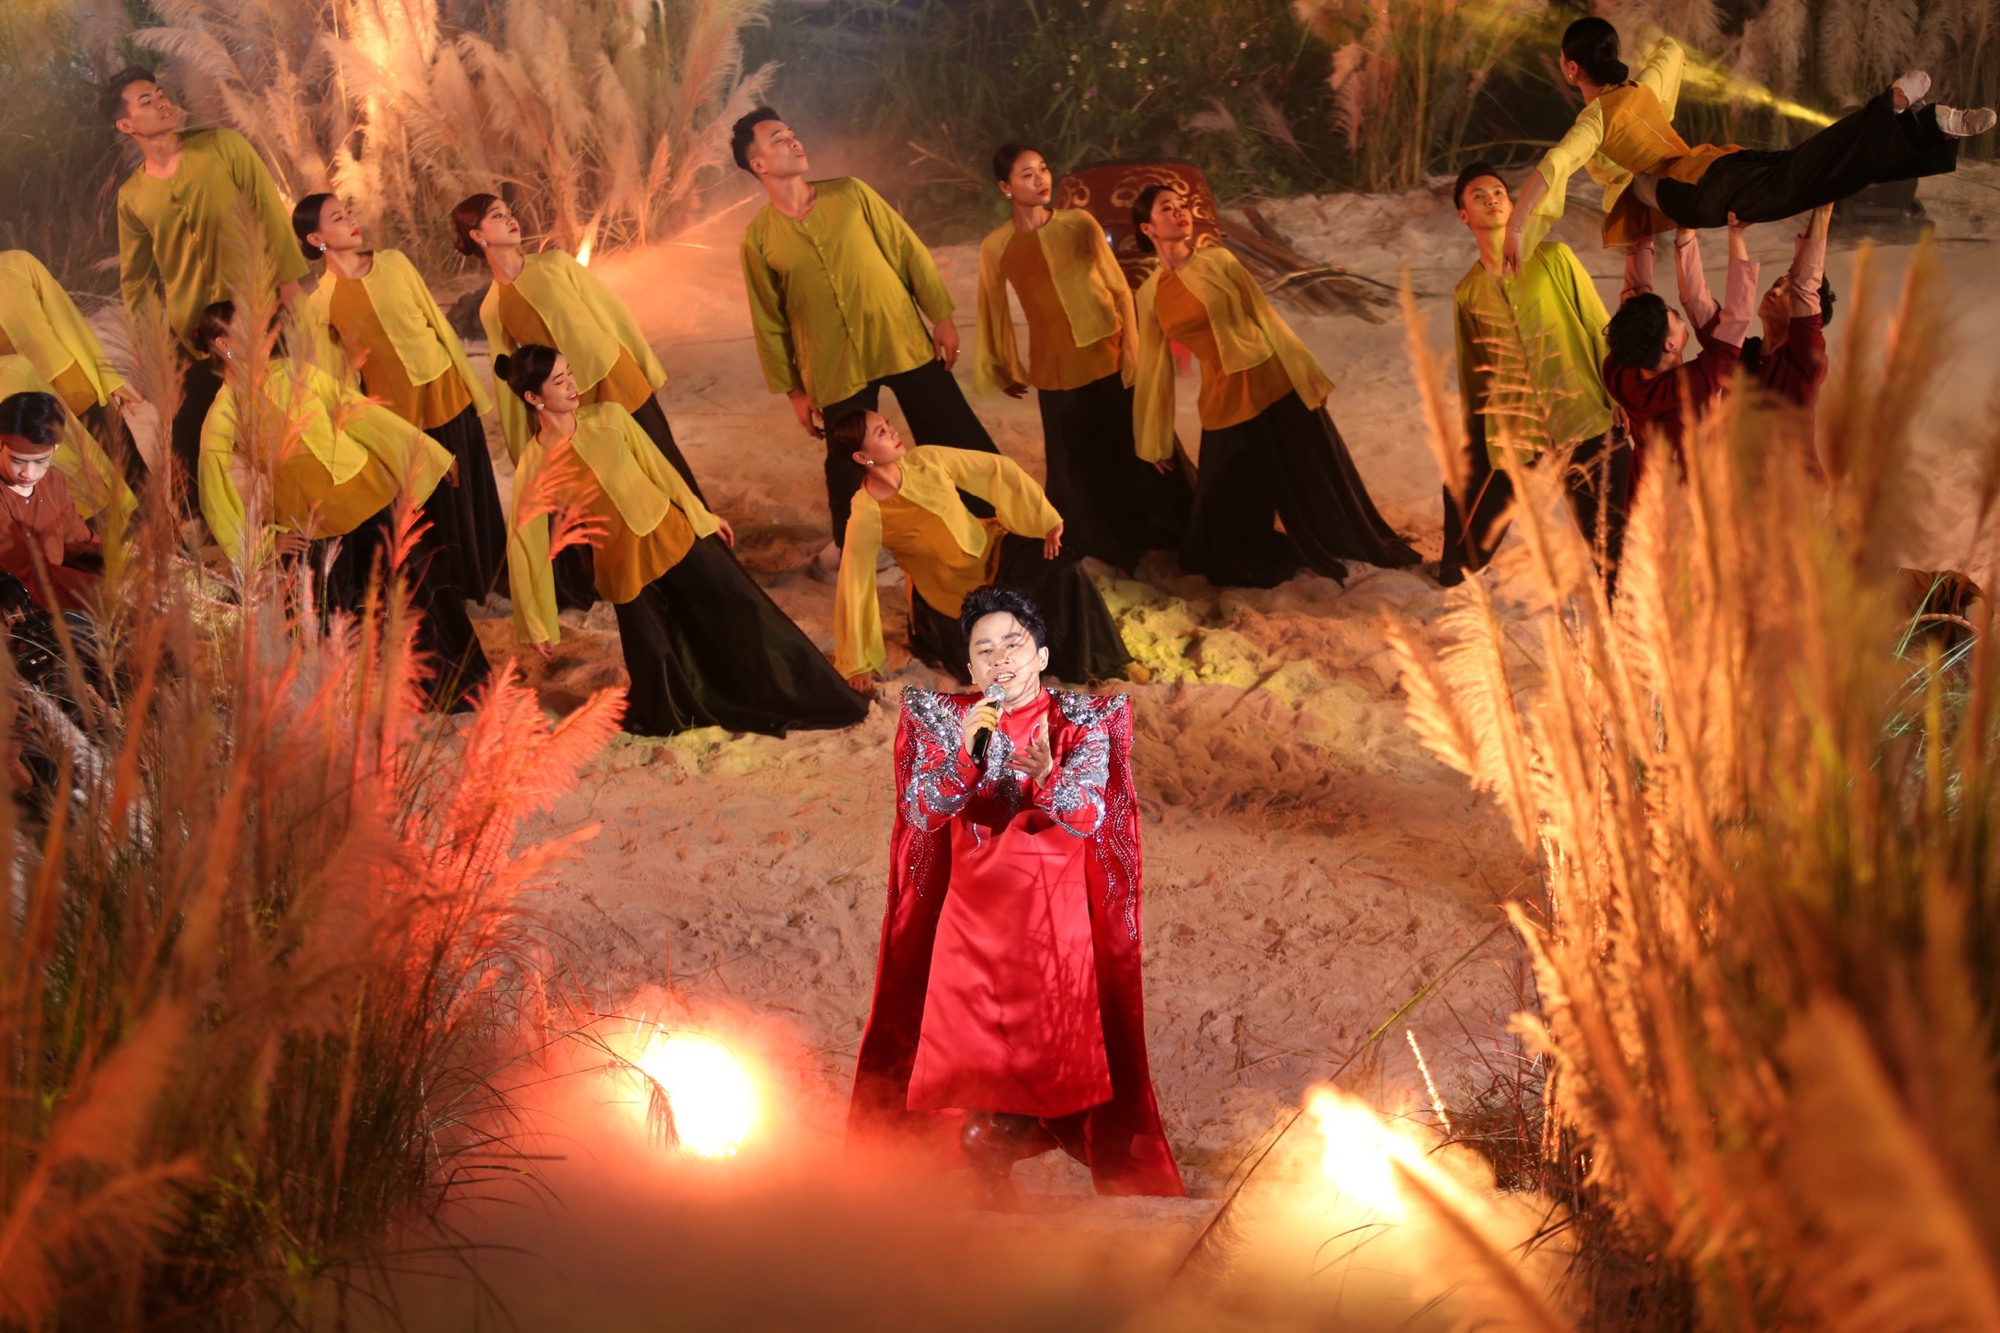 Tùng Dương, Kyo York 'phiêu' trên sân khấu thực cảnh bên bờ sông Hồng - Ảnh 5.